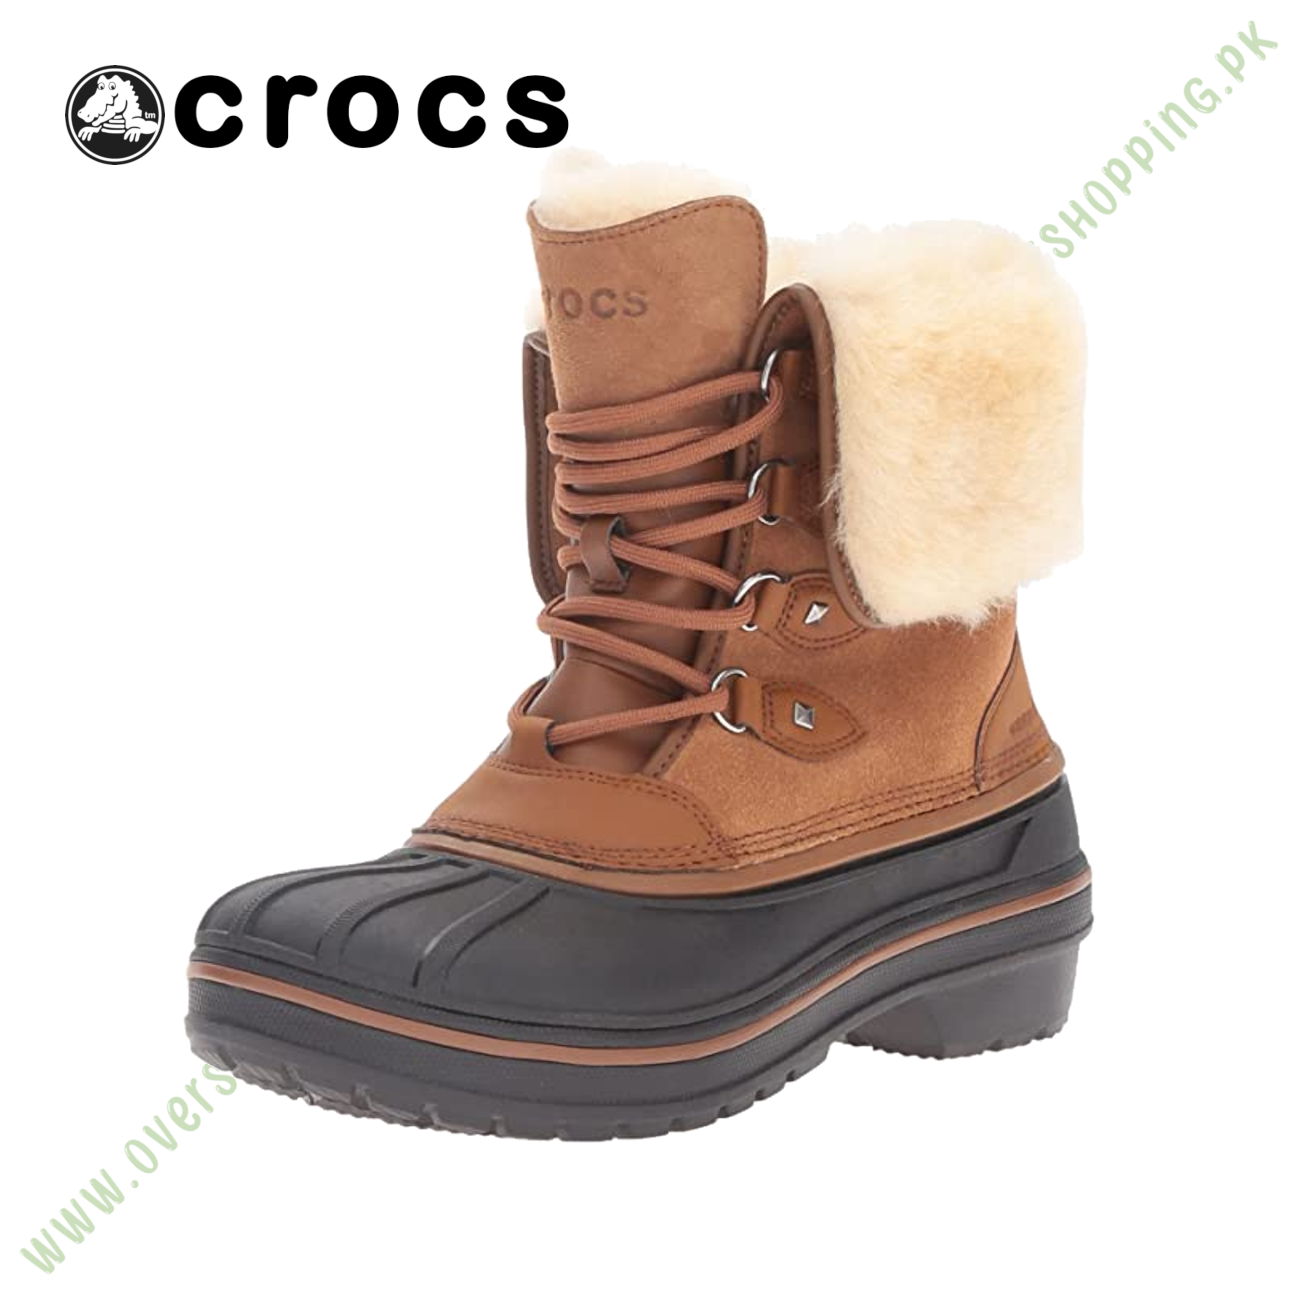 crocs Women s AllCast II Luxe Wheat Snow Boot, Whe